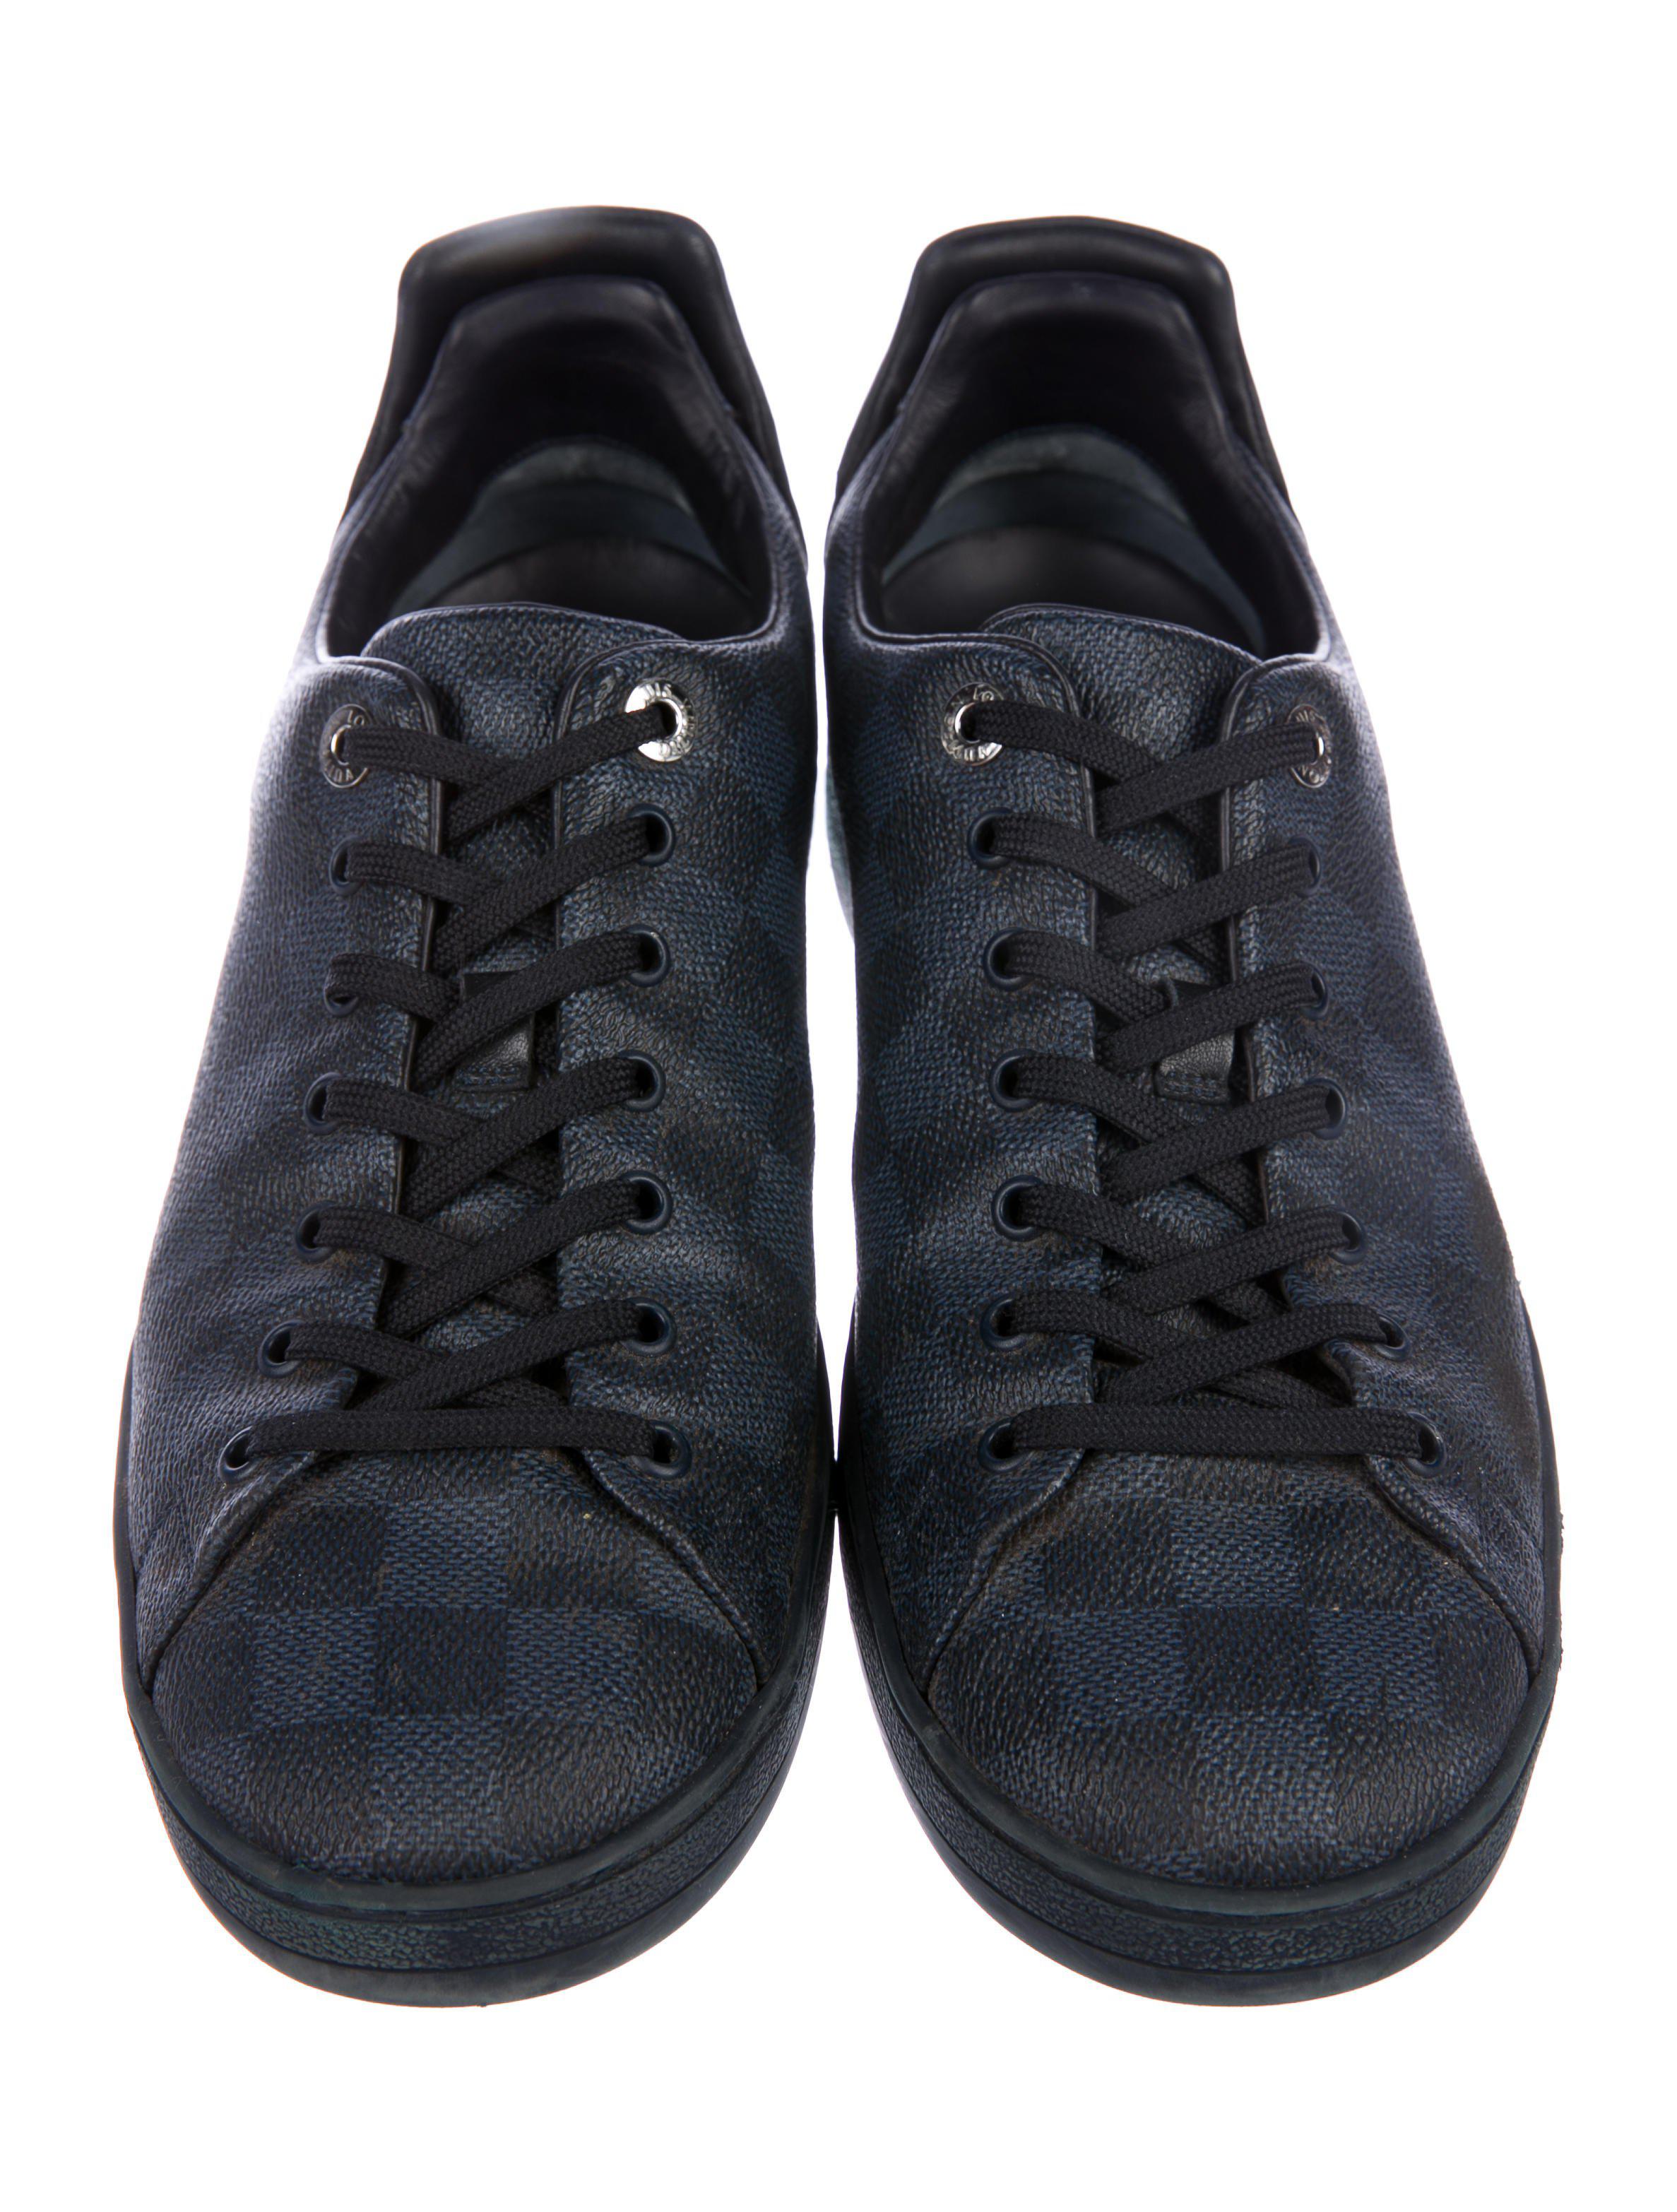 Louis Vuitton Men's Casual Shoes Sneakers Trainer Black | semashow.com